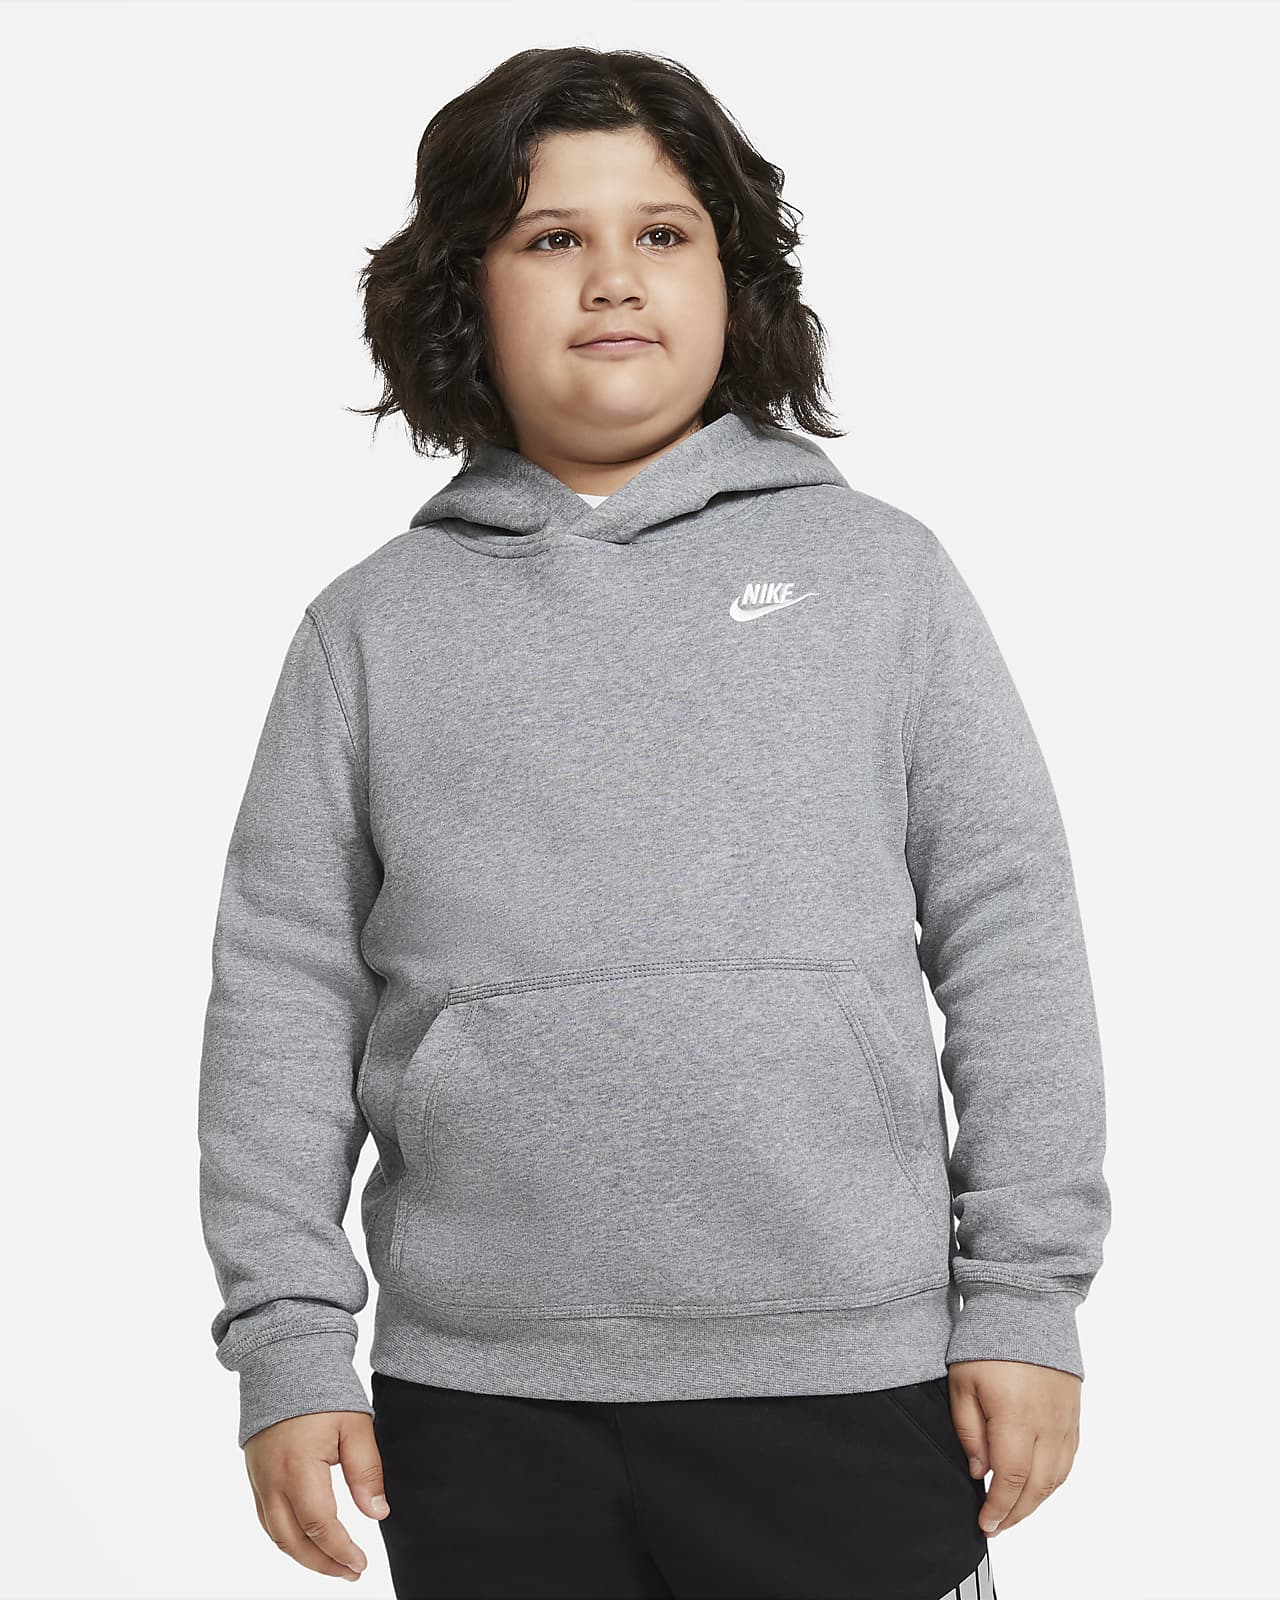 Nike Sportswear Club Fleece Older Kids' Joggers (Extended Size